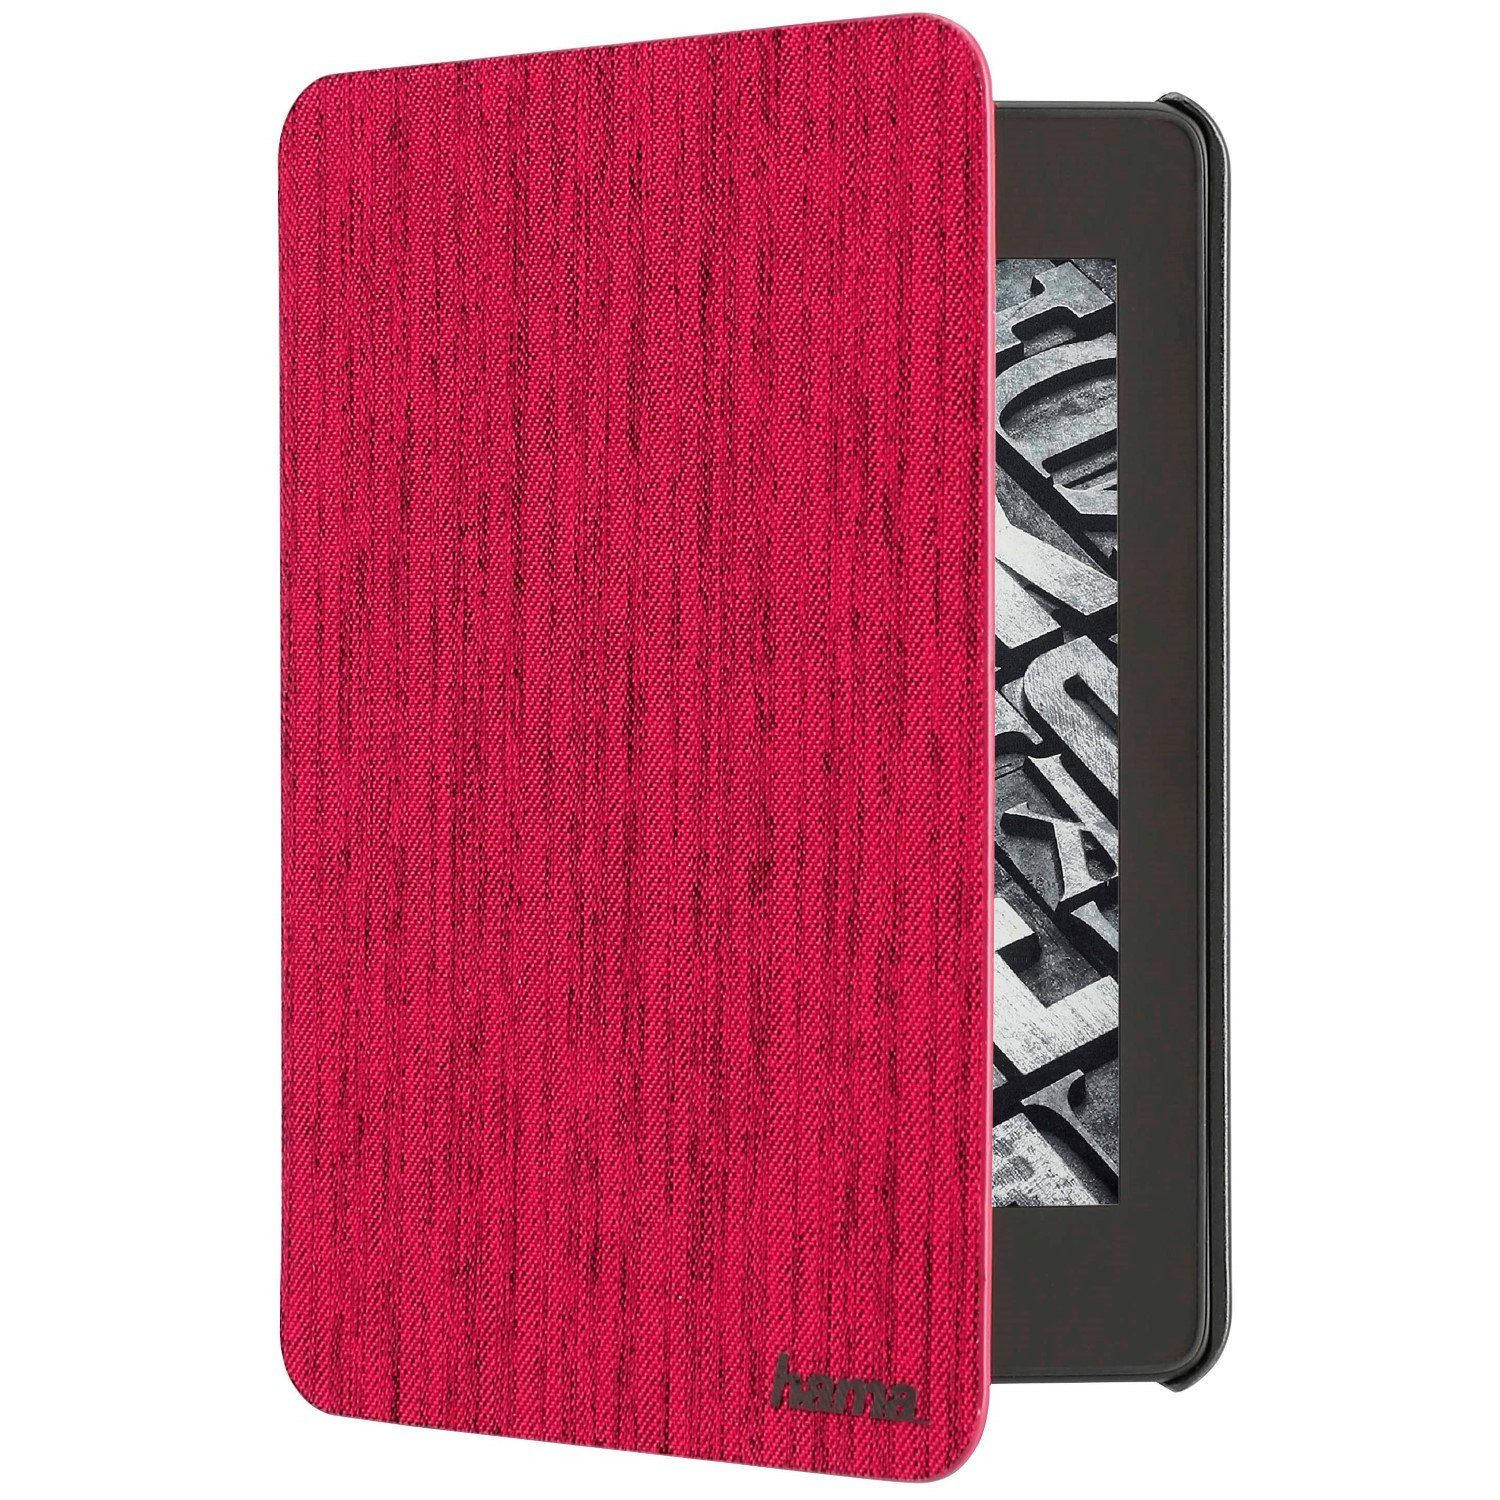 hama-tablet-huelle-cover-tasche-6-portfolio-schutz-huelle-case-etui-passend-fuer- amazon-paperwhite-4-10-generation-6-zoll-ereader-ebook-reader.jpg?$formatz$